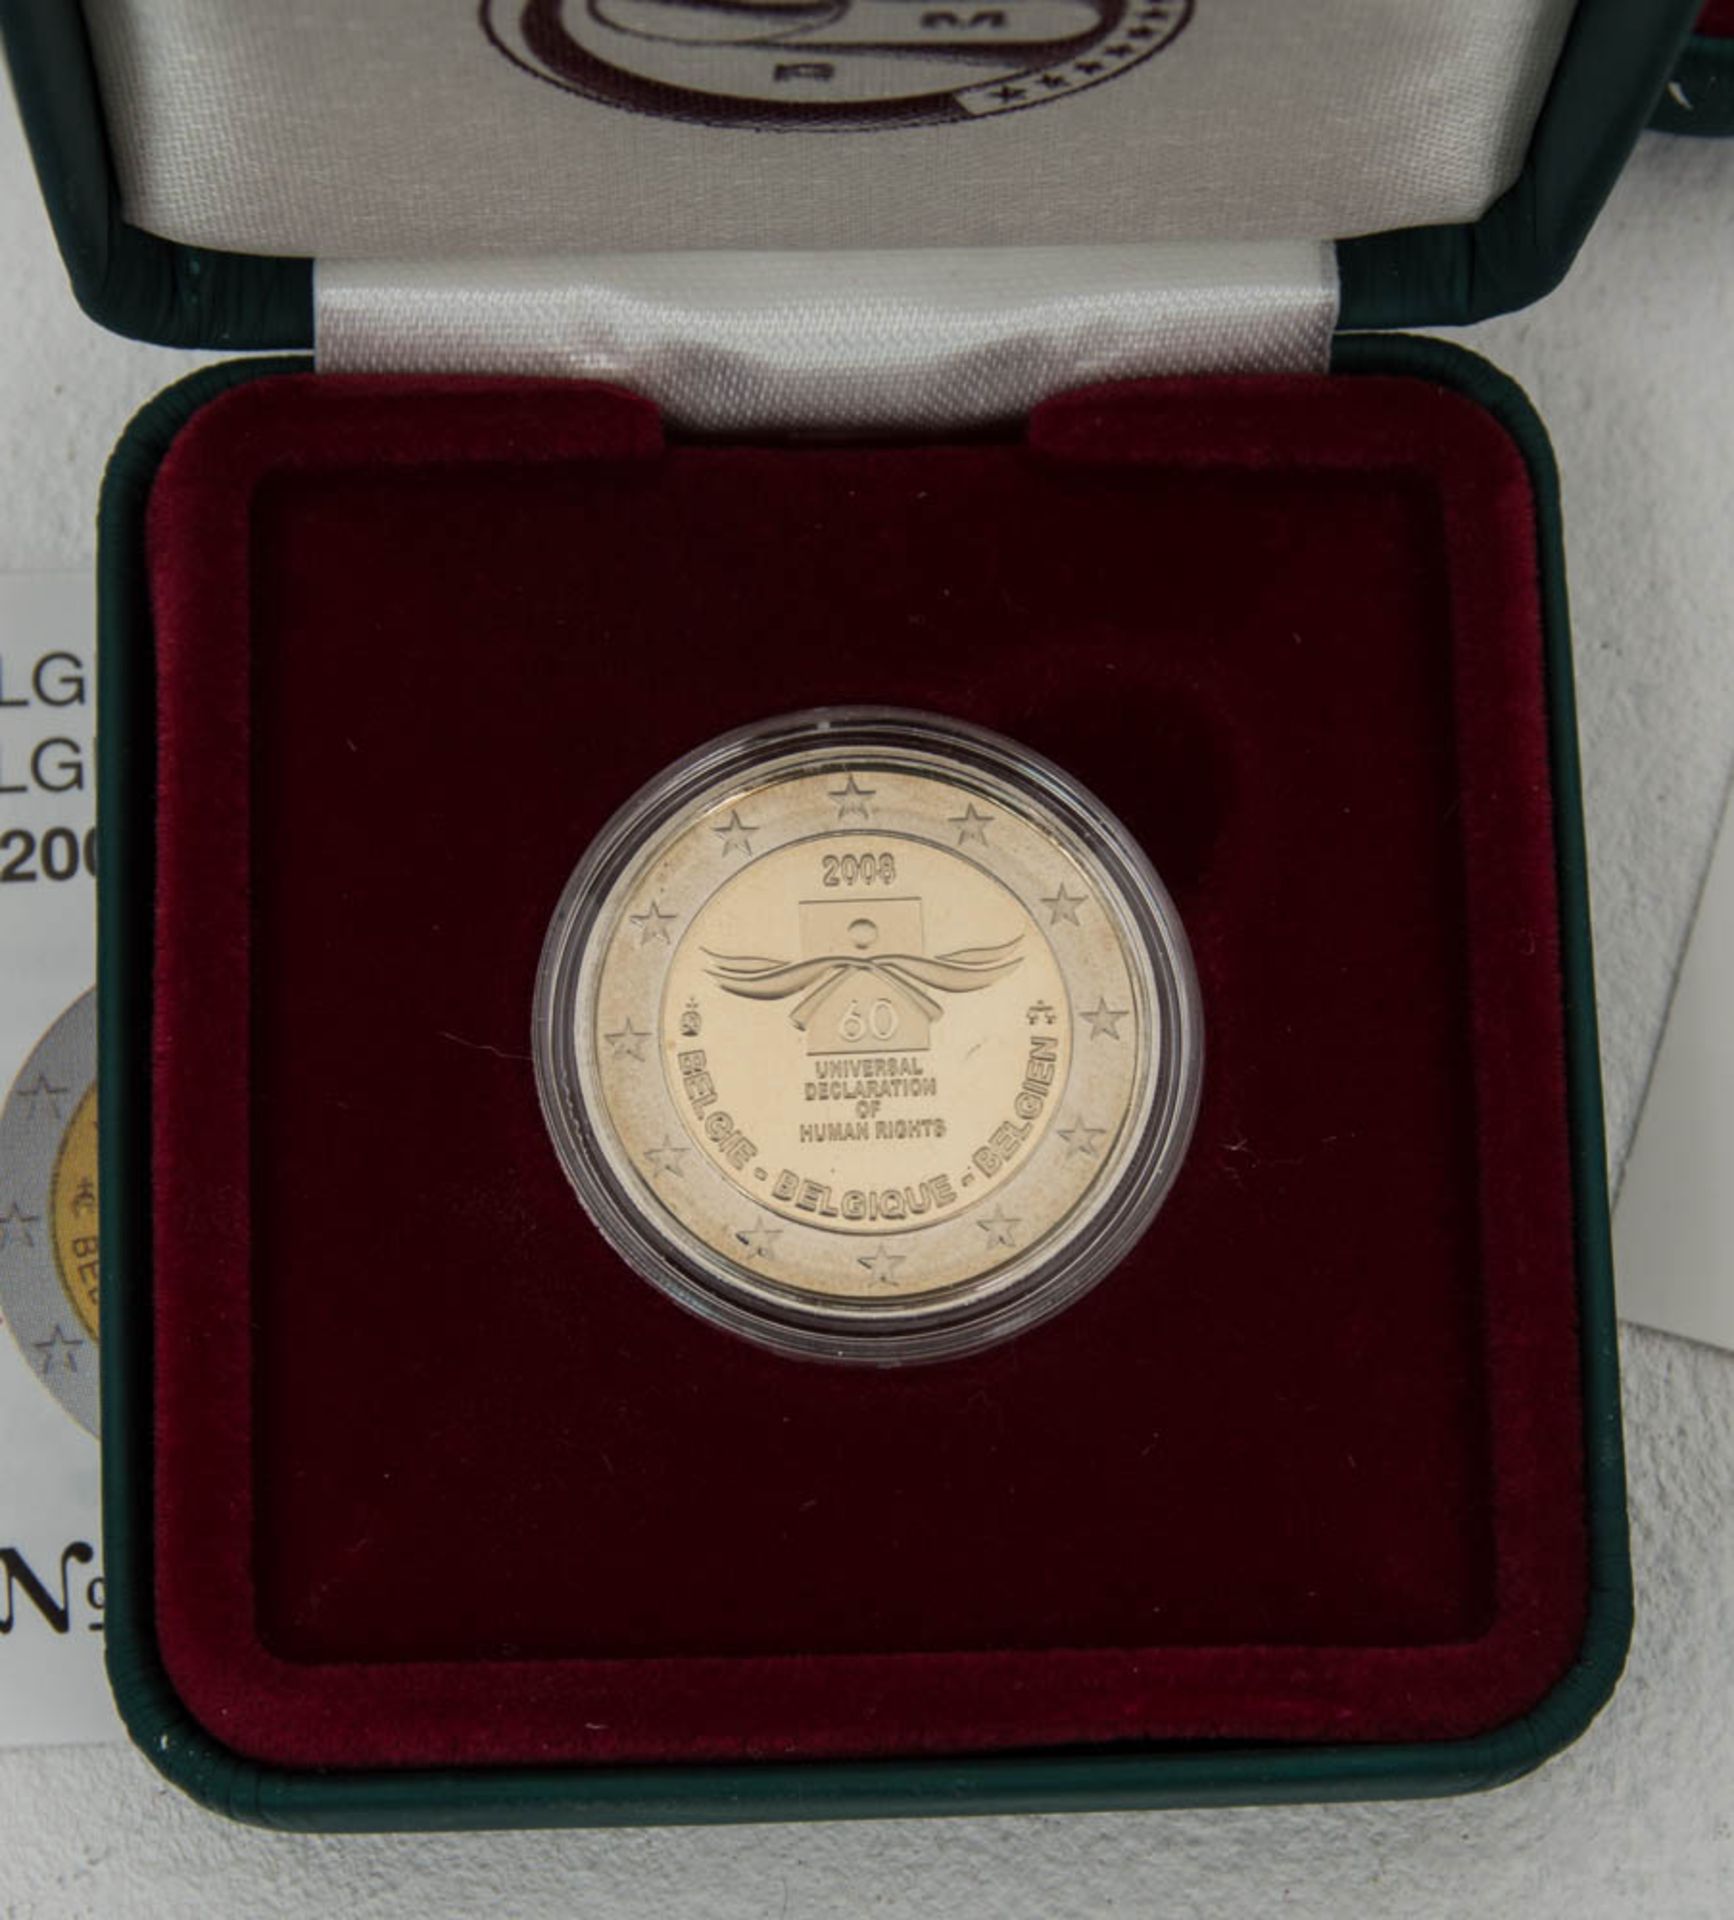 Sammlung Belgien 2 € Münzen.15 Stück, durchweg Sammlerqualität mit OVPs.Belgie - Bild 3 aus 6